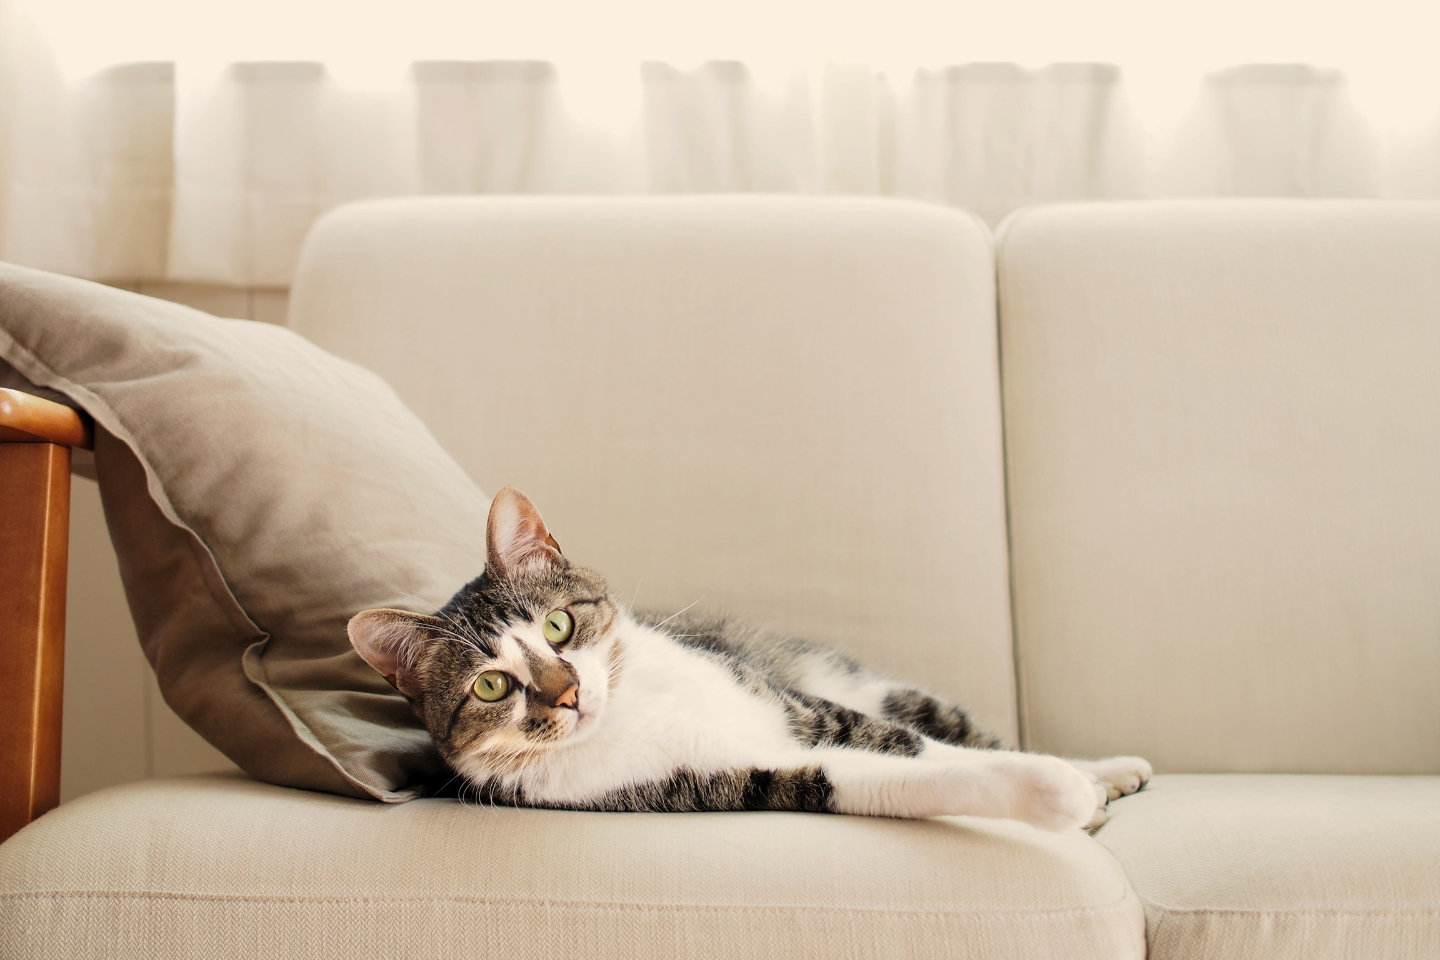 un chat allongé sur un canapé contre un coussin fixe l'objectif